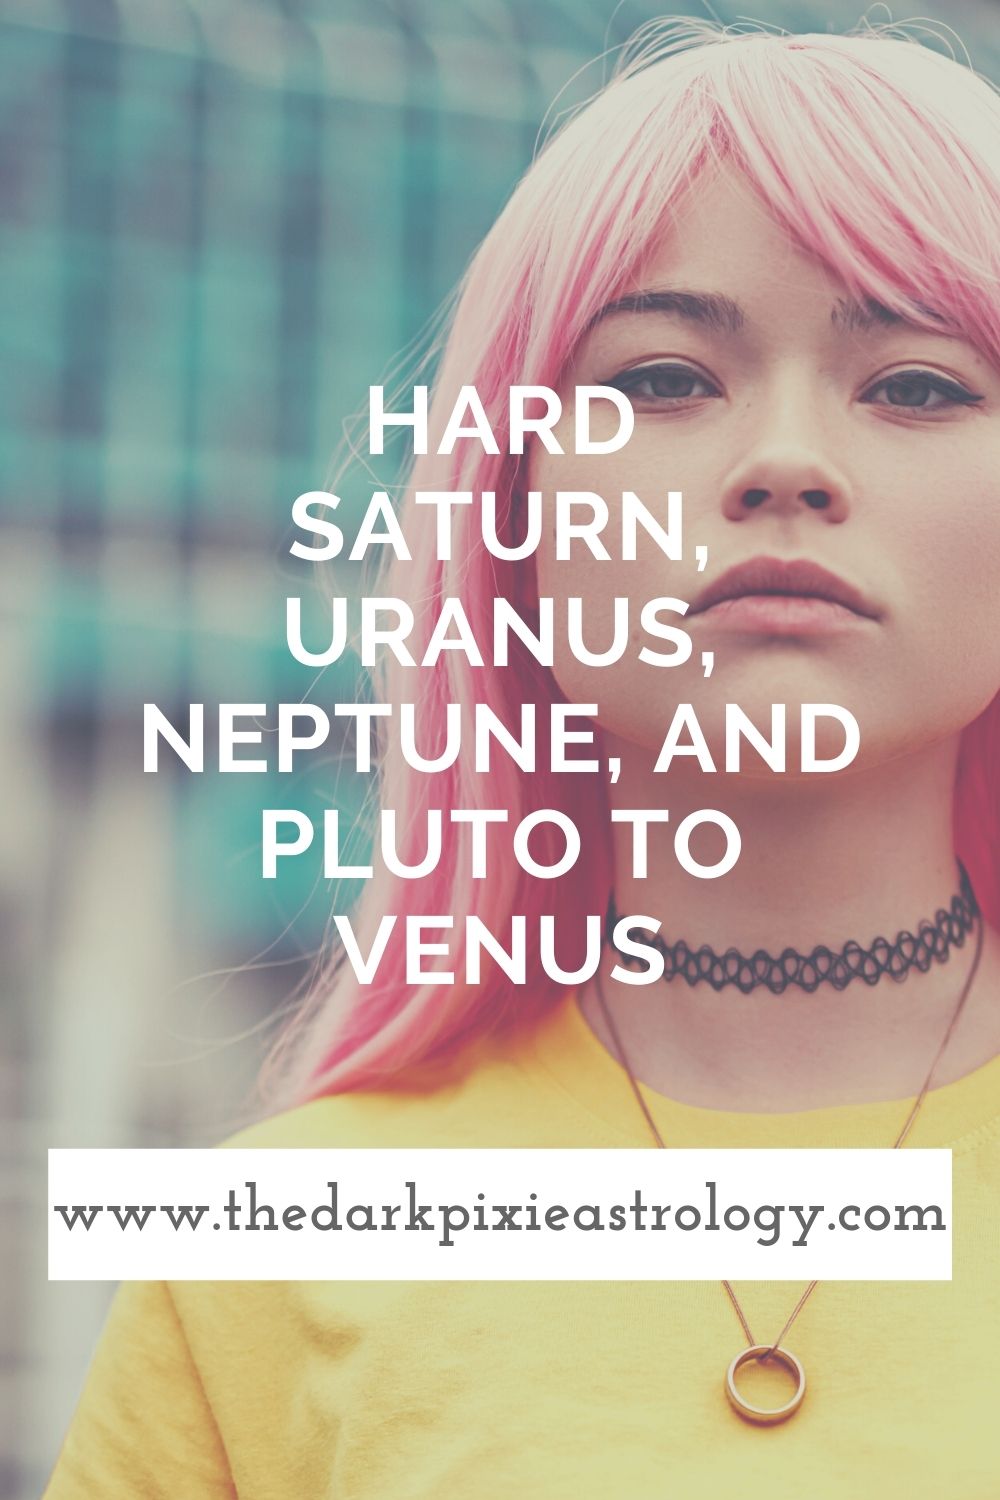 Hard Saturn, Uranus, Neptune, and Pluto to Venus - The Dark Pixie Astrology